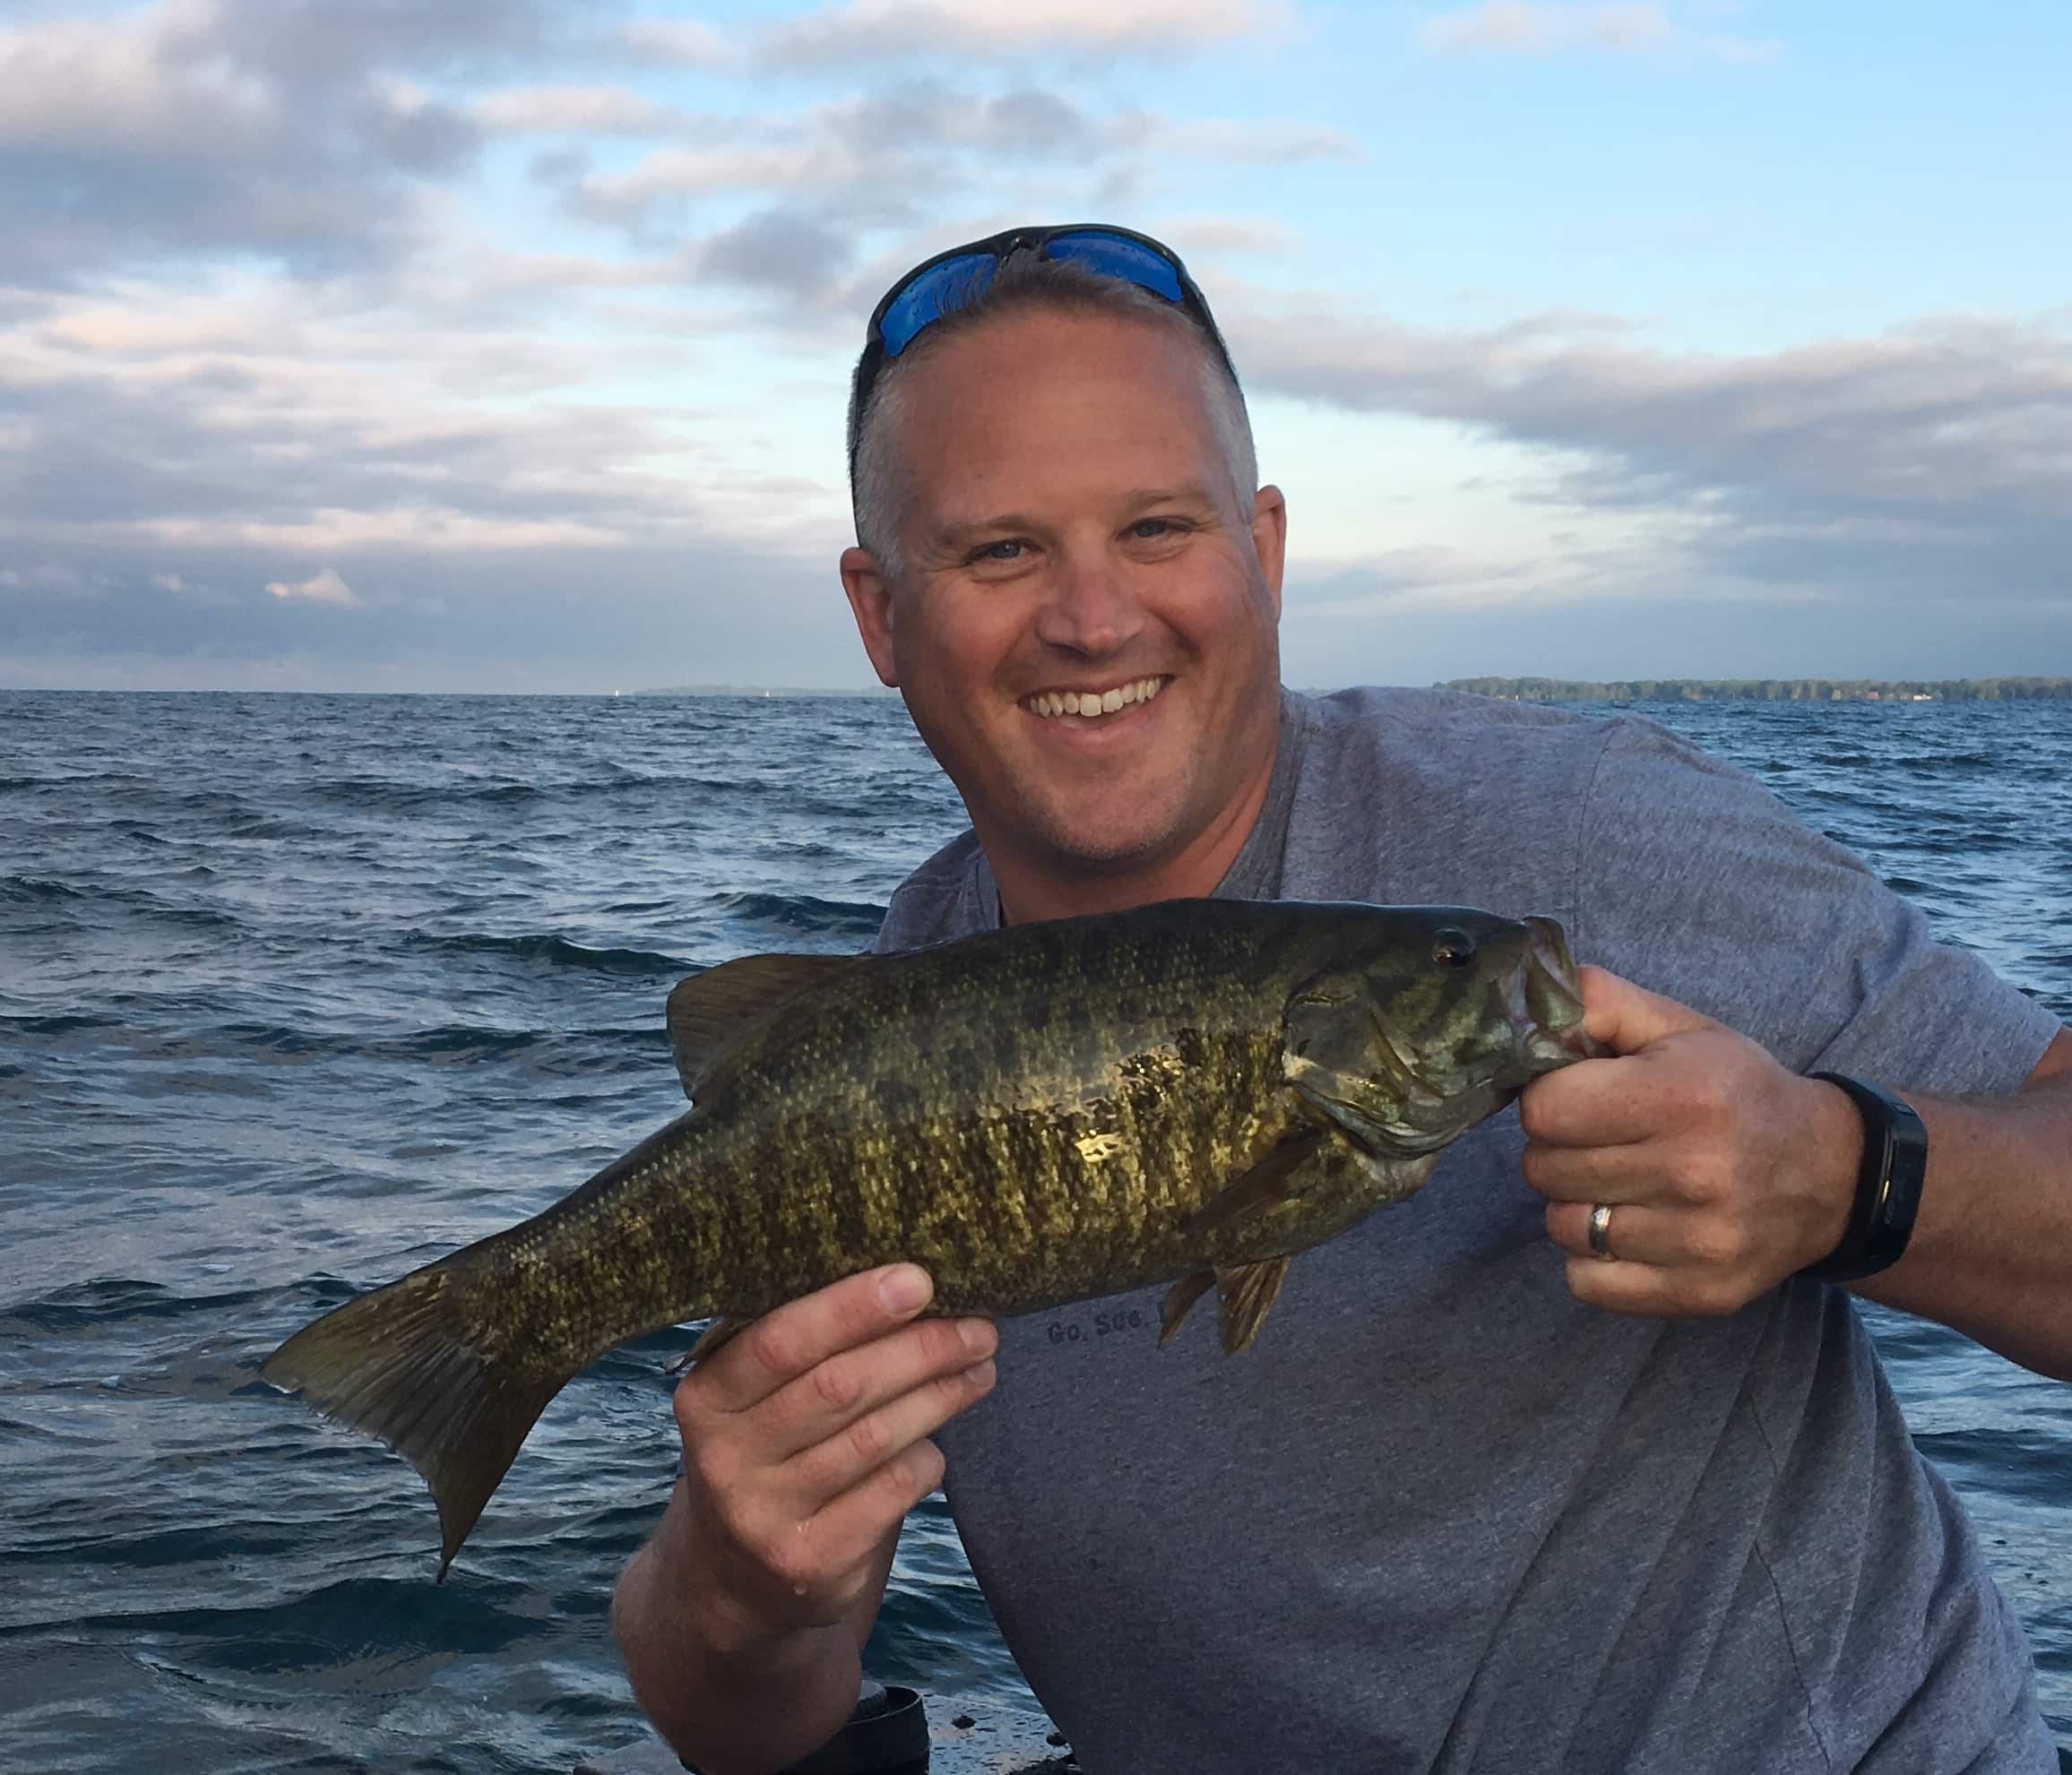 20170715 103414189 iOS - Fishing Buffalo Niagara - Fall 2017 Update